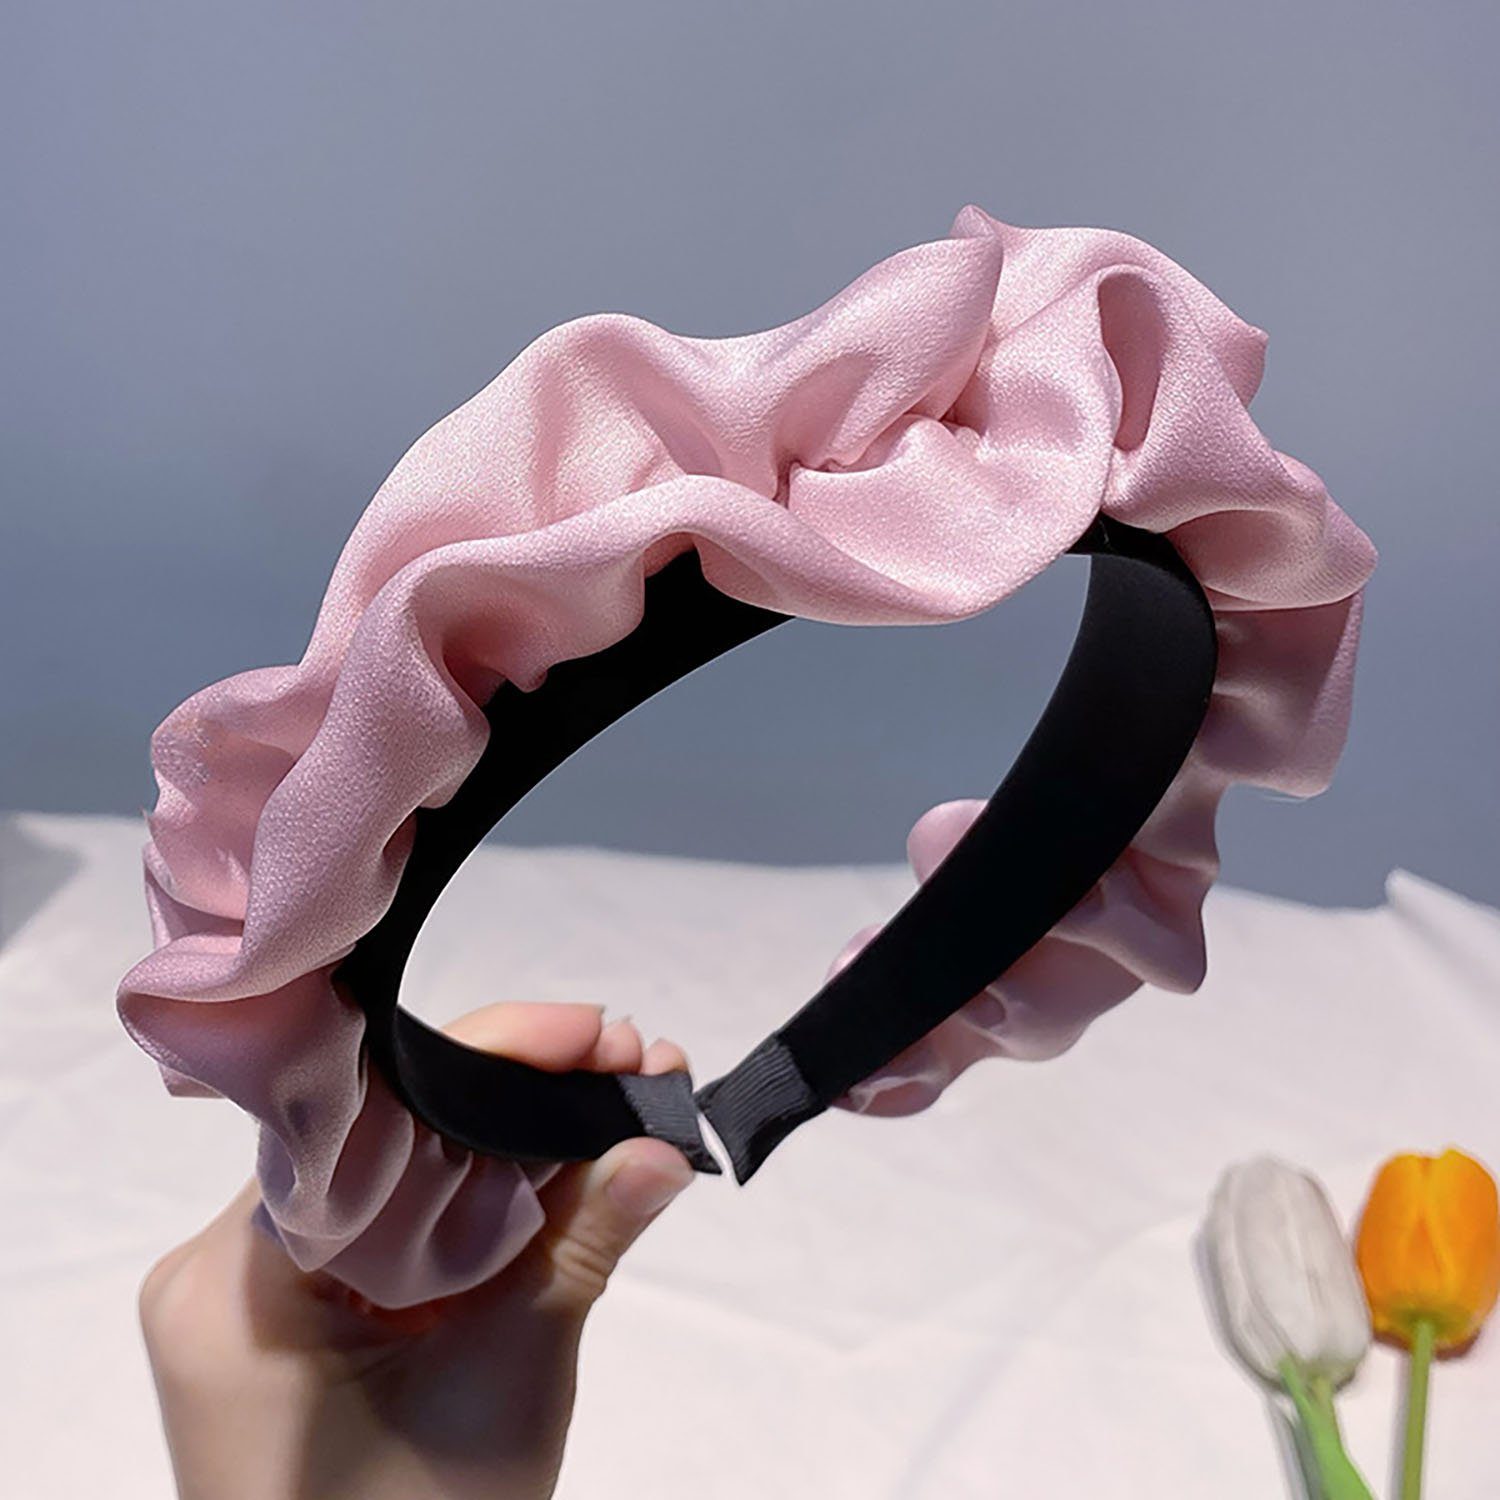 yozhiqu Haarband Gefaltetes Stirnband für Frauen, Sommer Gesicht waschen spezielle, rutschfeste hohe Stirnband Haarnadel, Verschiedene Farben verfügbar